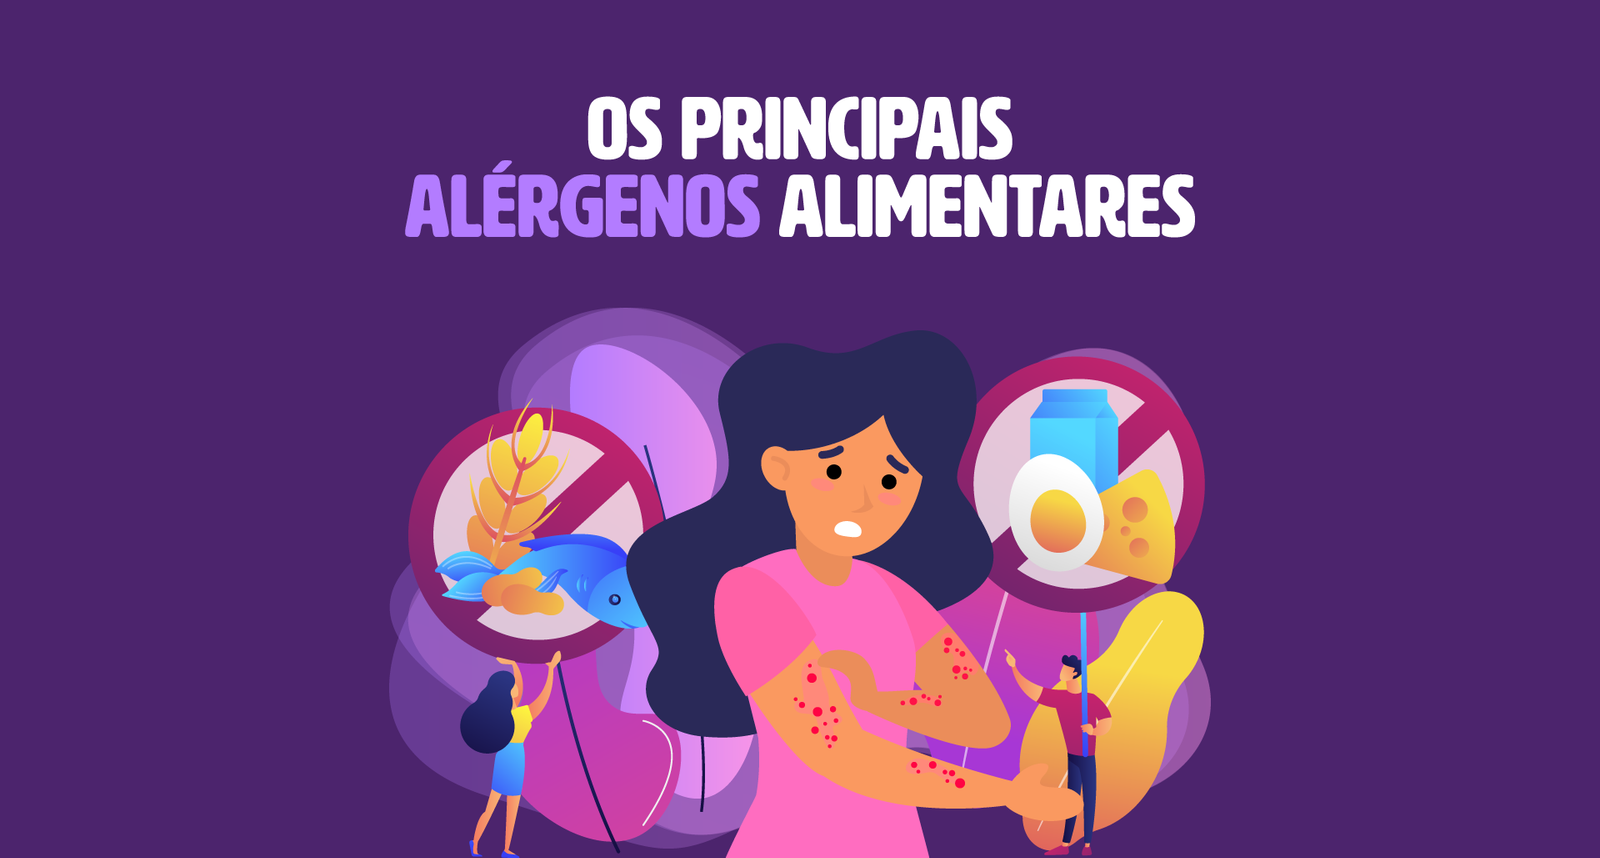 Os 8 principais alérgenos alimentares; e a diferença entre Alergia Alimentar e Alérgenos Alimentares.